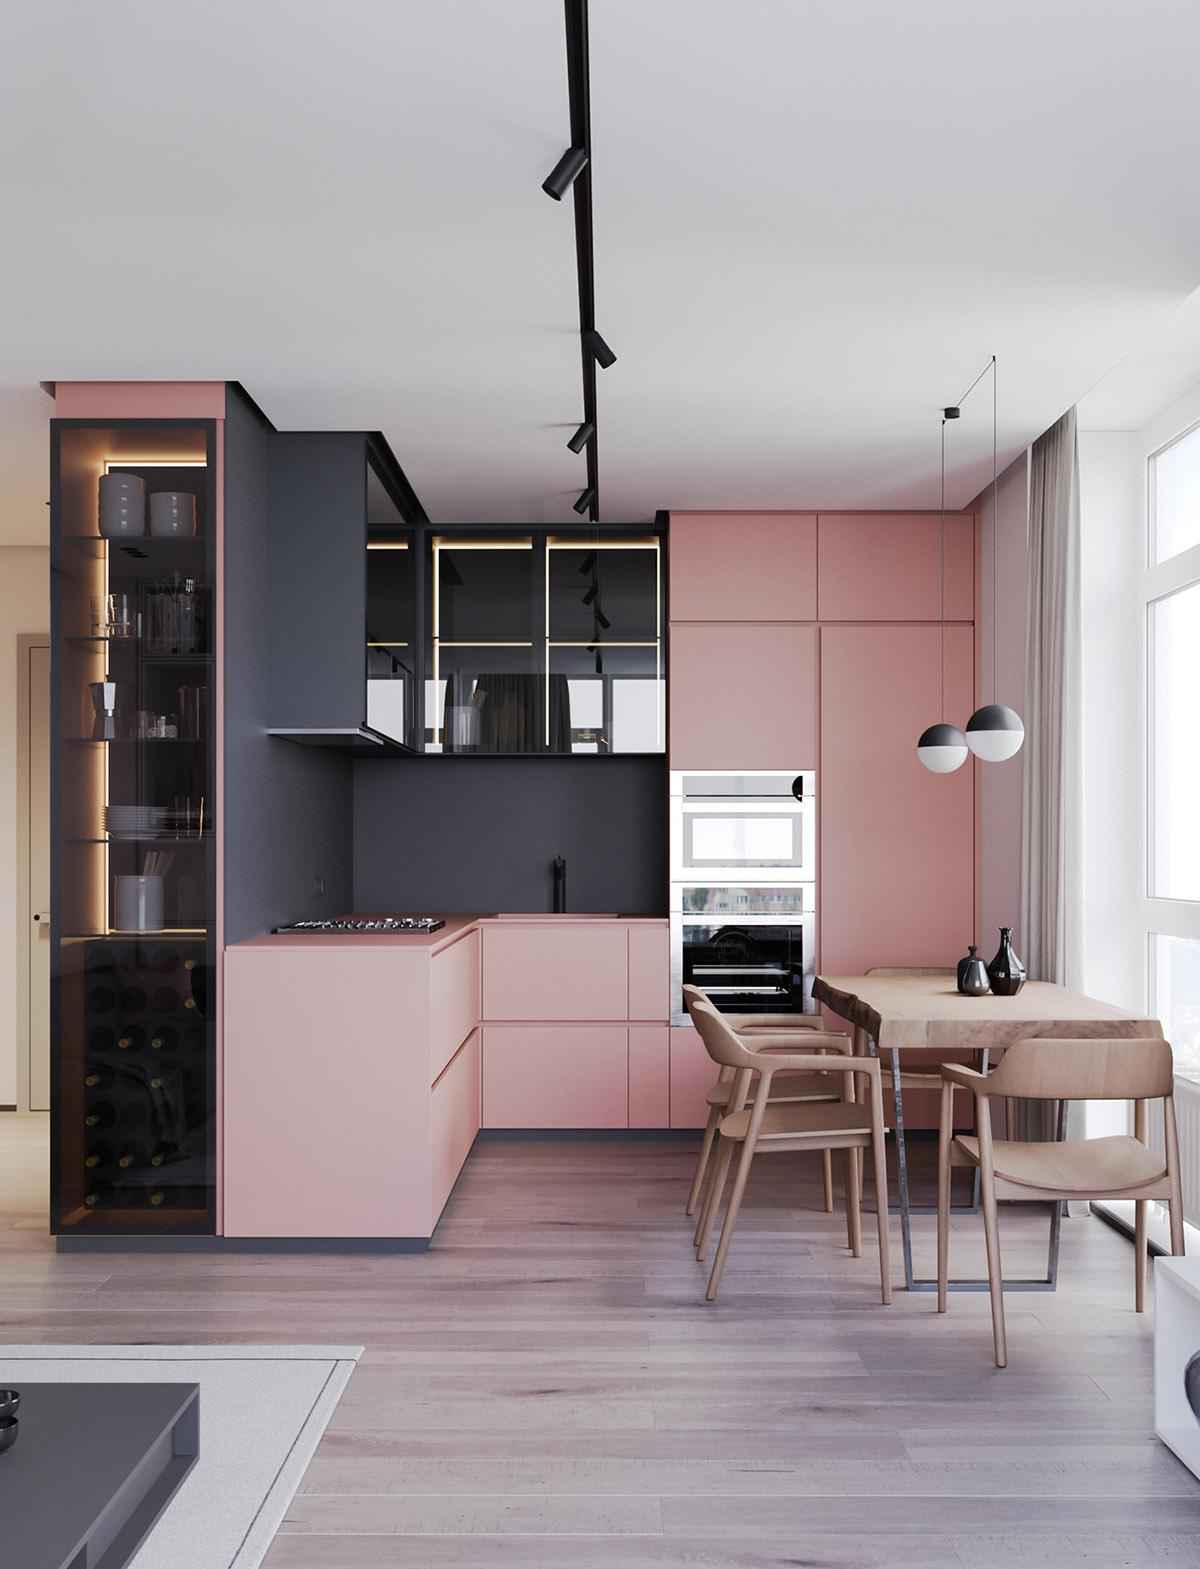 20 идей кухонь в розовом цвете 3 | Дока-Мастер